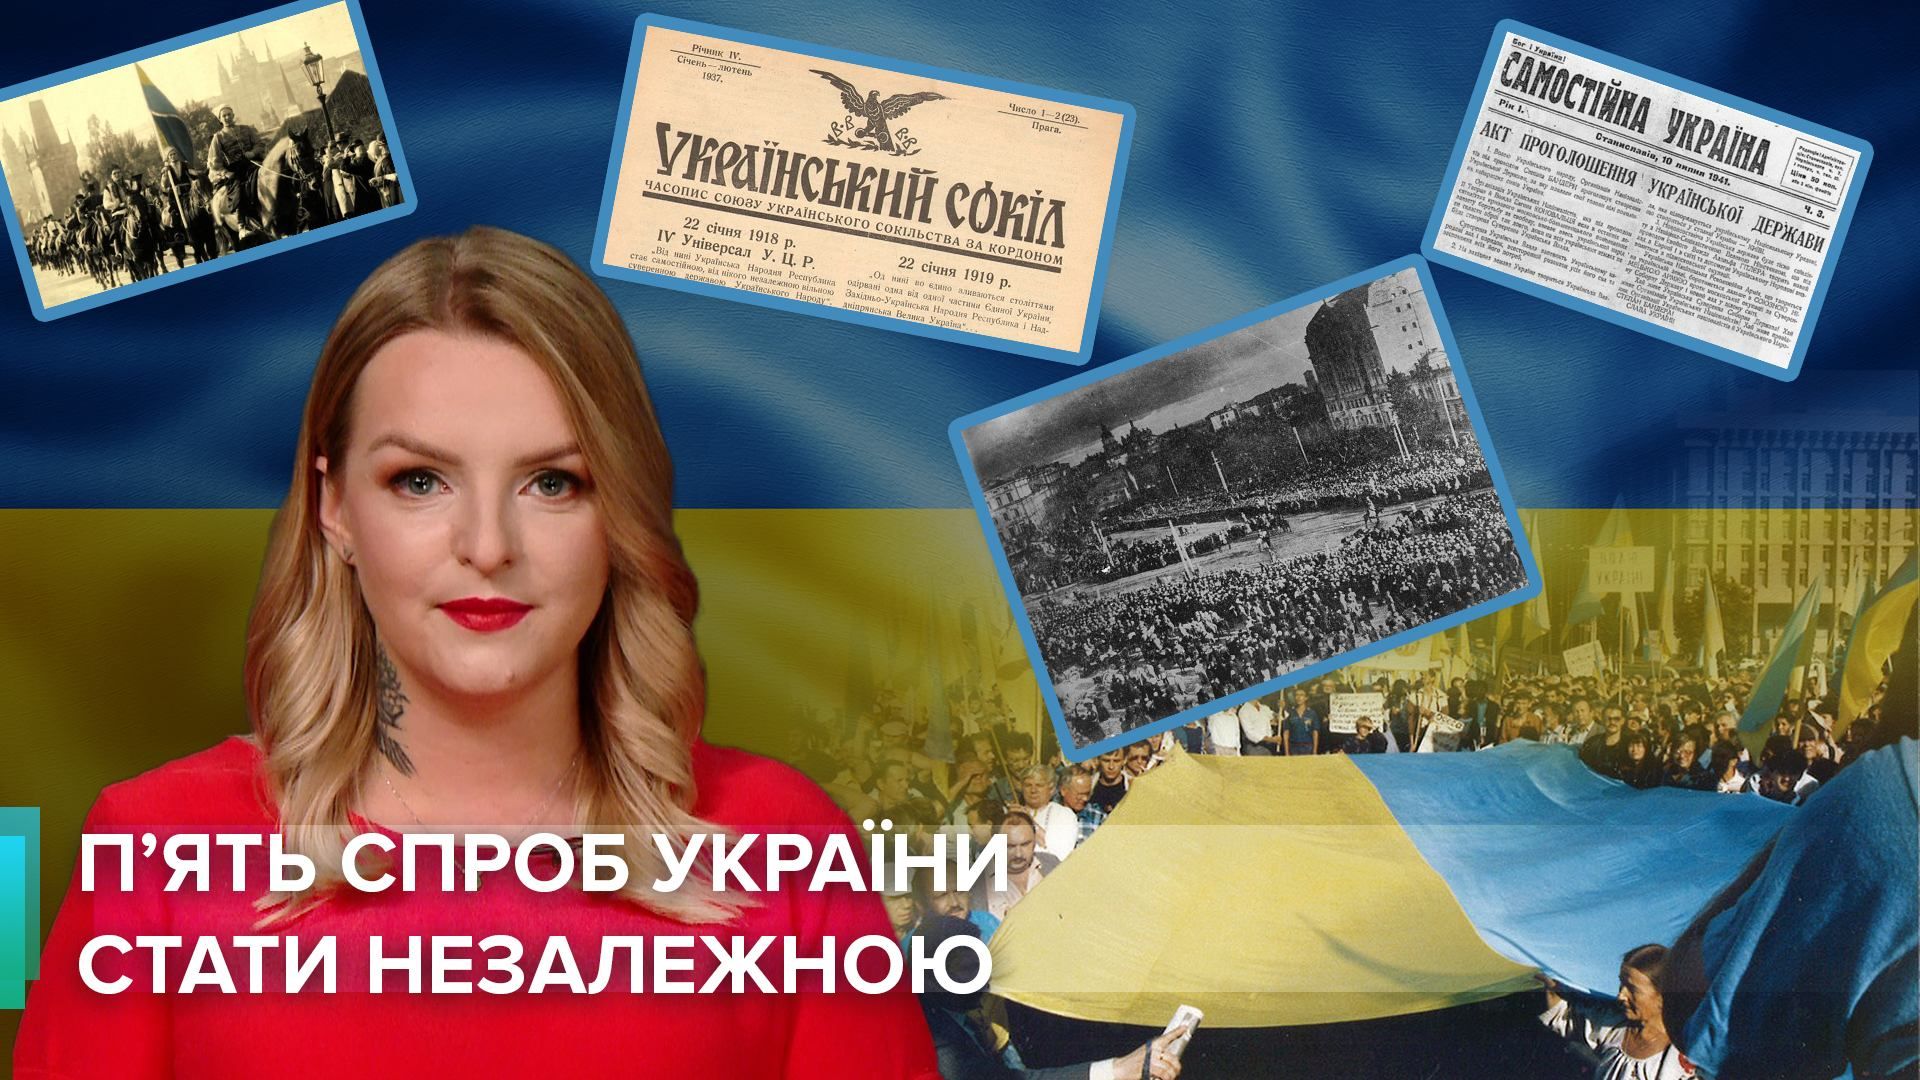 Независимость Украины 30 лет: 5 судьбоносных попыток